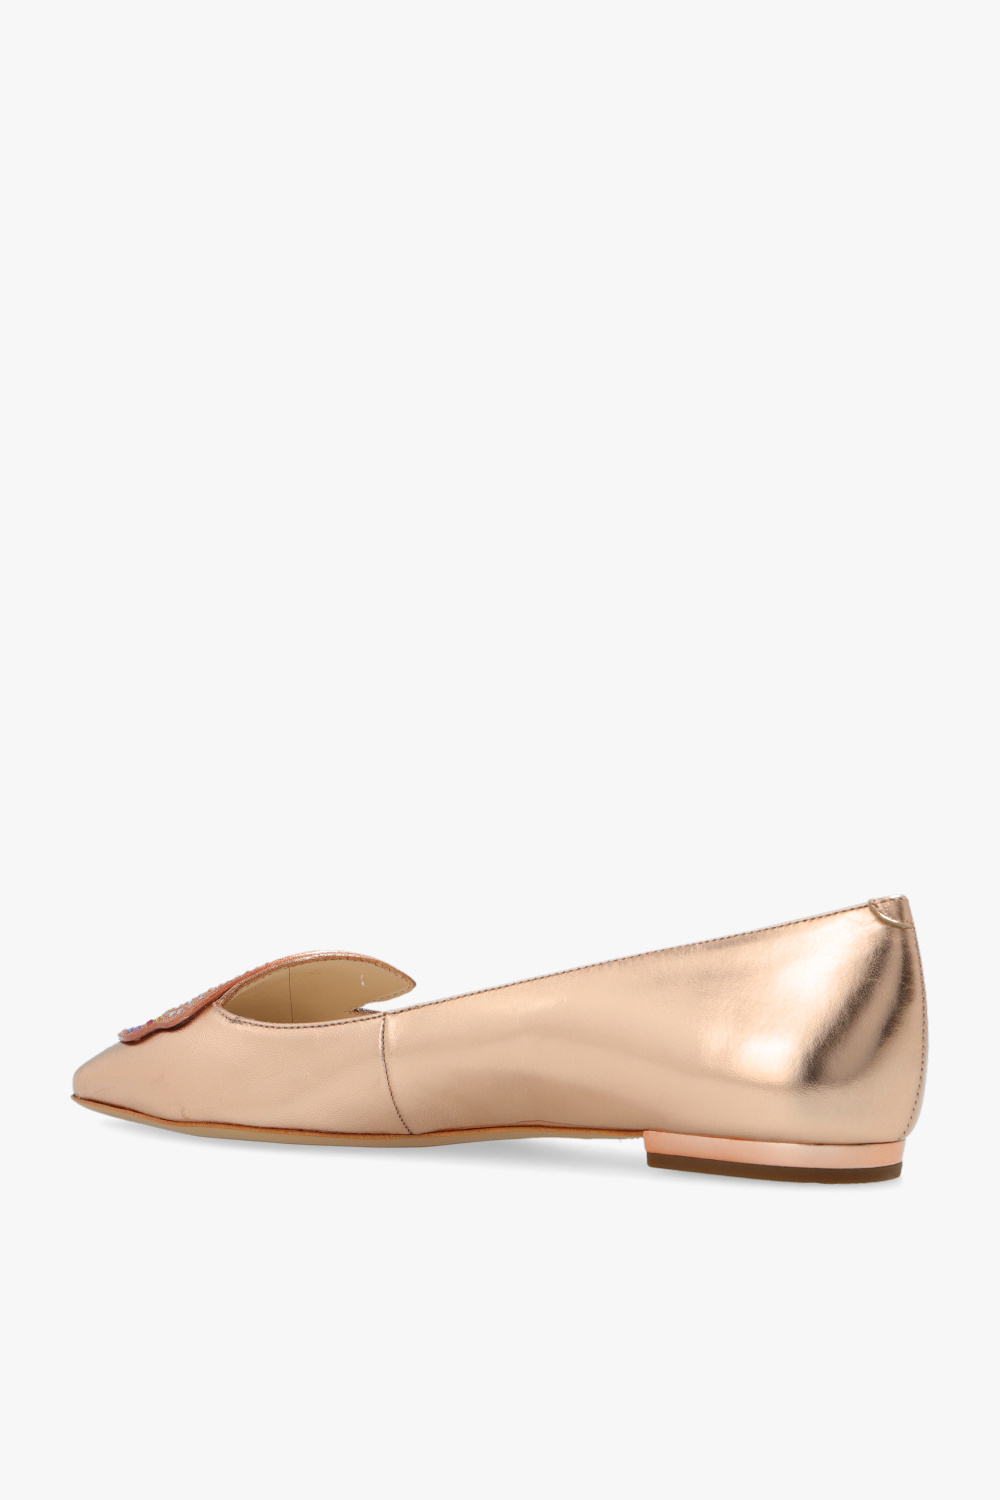 Sophia Webster ‘Butterfly’ shoes